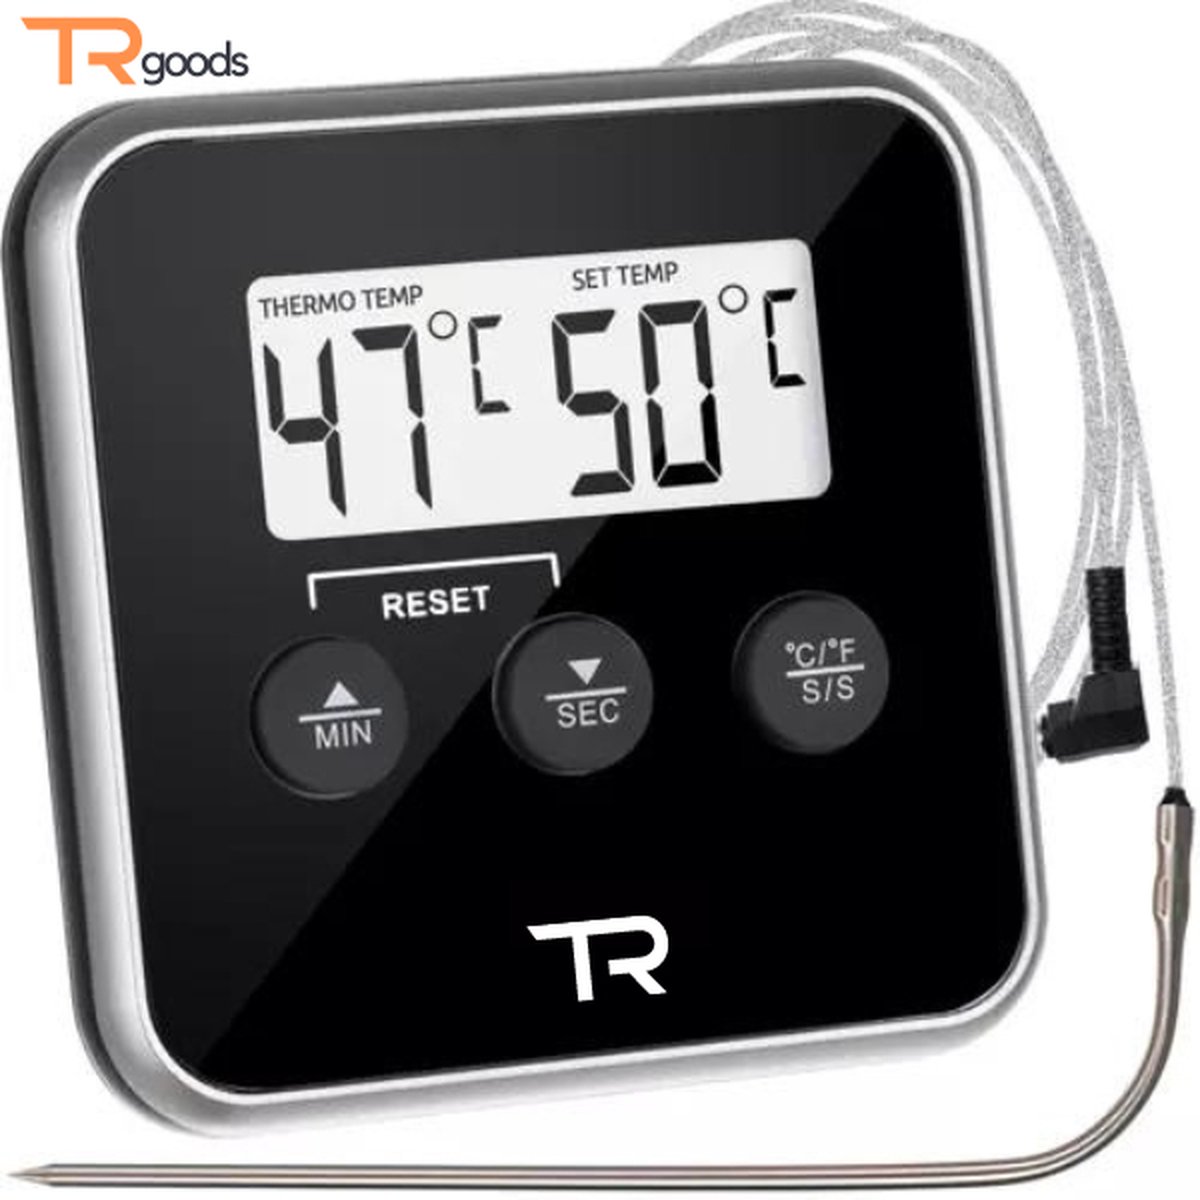 T.R. Goods - Keuken Thermometer met Sonde - Temperatuur Waarschuwing Functie - Keuken thermometer, barbecue, digitale, kerntemperatuur, vleesthermometer, thermometer